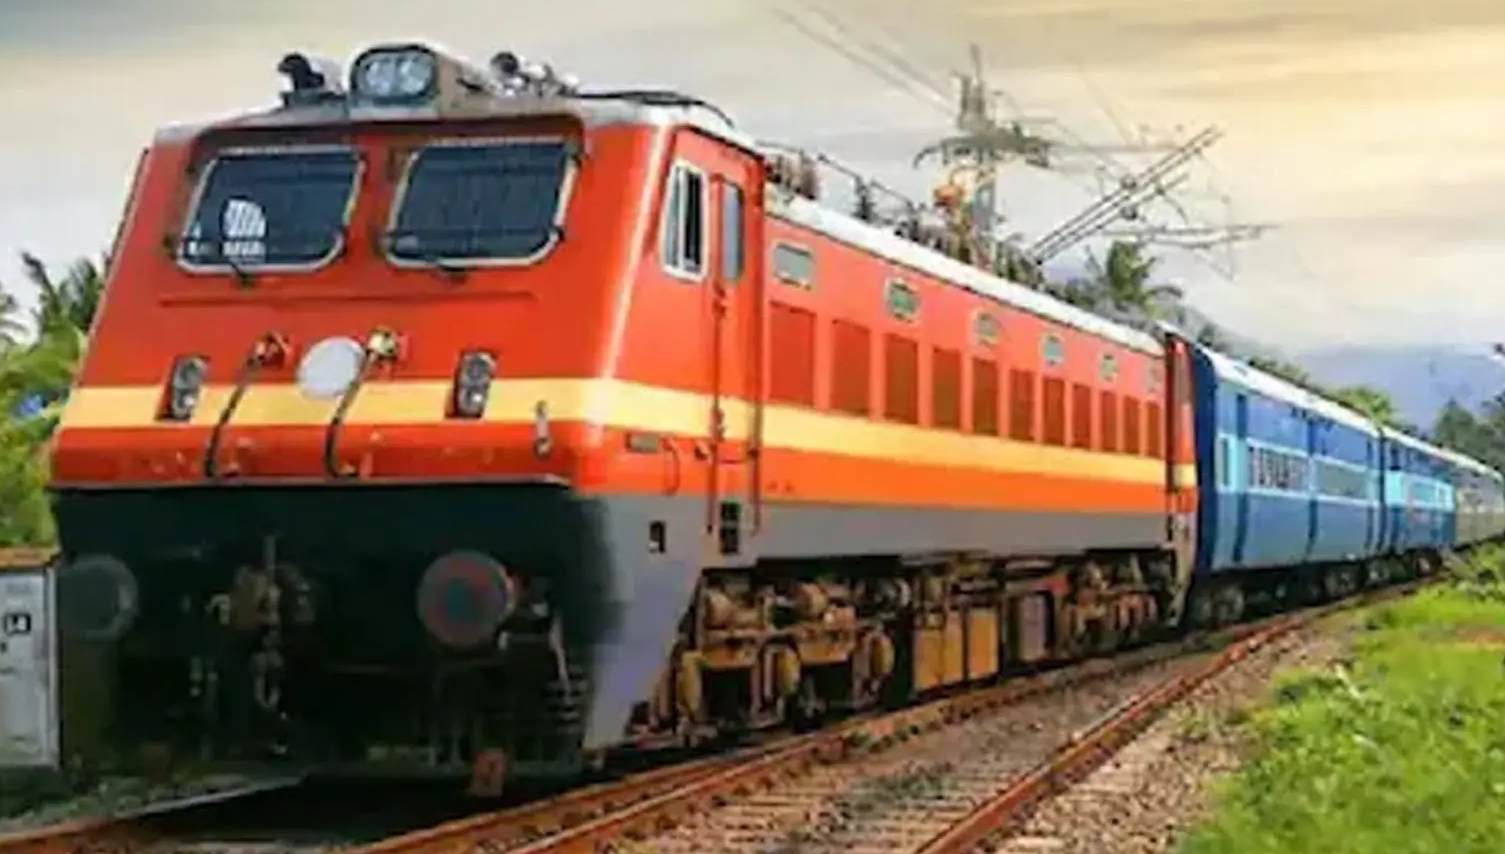 यात्रीगण कृपया ध्यान देंः PM मोदी के कार्यक्रम के चलते तीन दिनों तक ट्रेन हॉल्ट की व्यवस्था चेंज, वंदे भारत का फाइनल शेड्यूल जारी, स्टेशन की सजावट शुरू